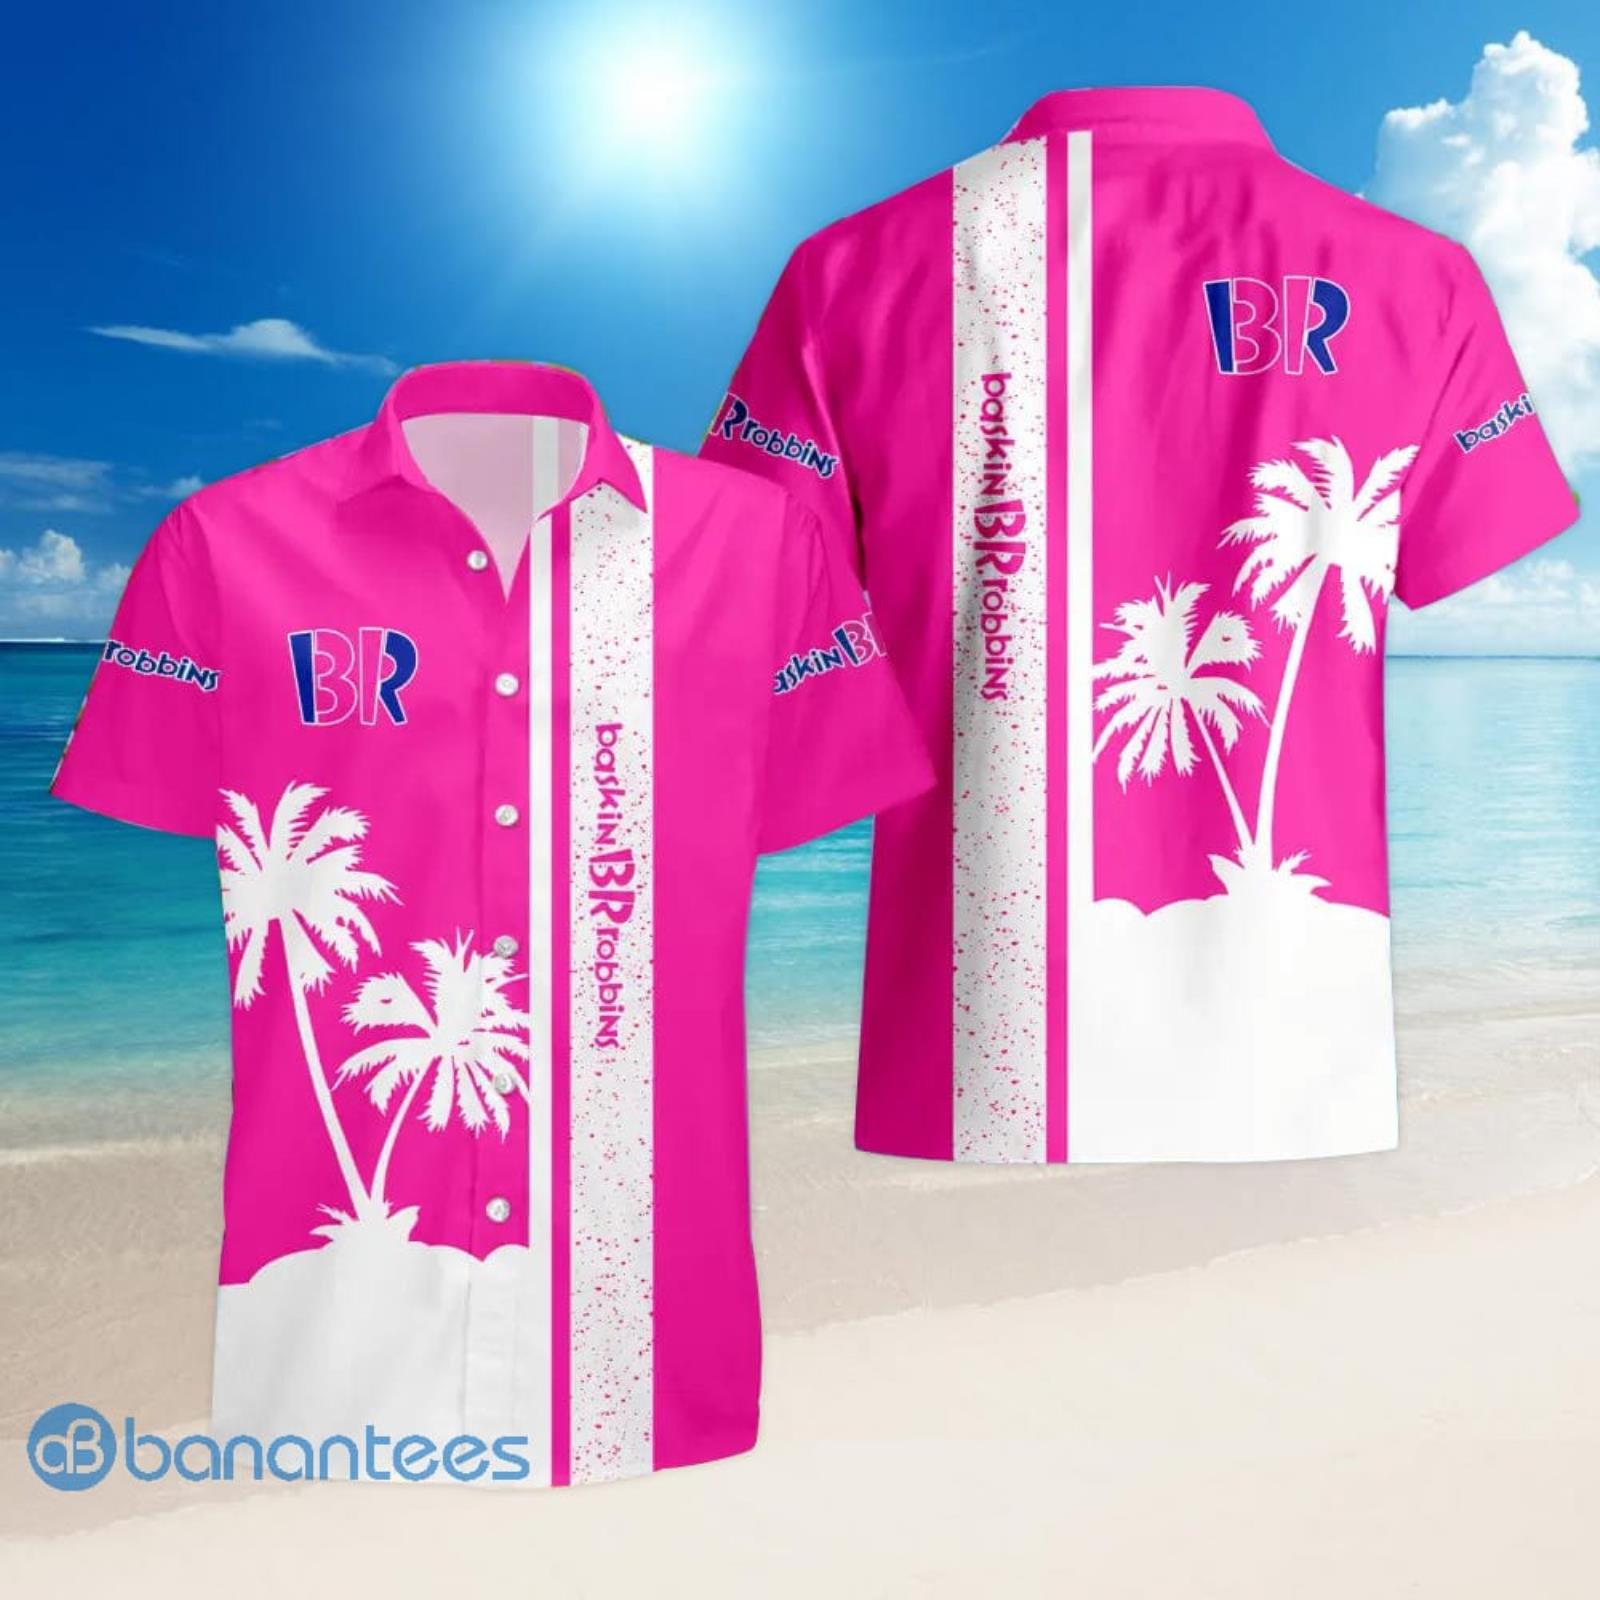 Baskin Robbins Tropical Palm Tree Aloha Hawaiian Shirt And Shorts Summer Vacation Gift Product Photo 1